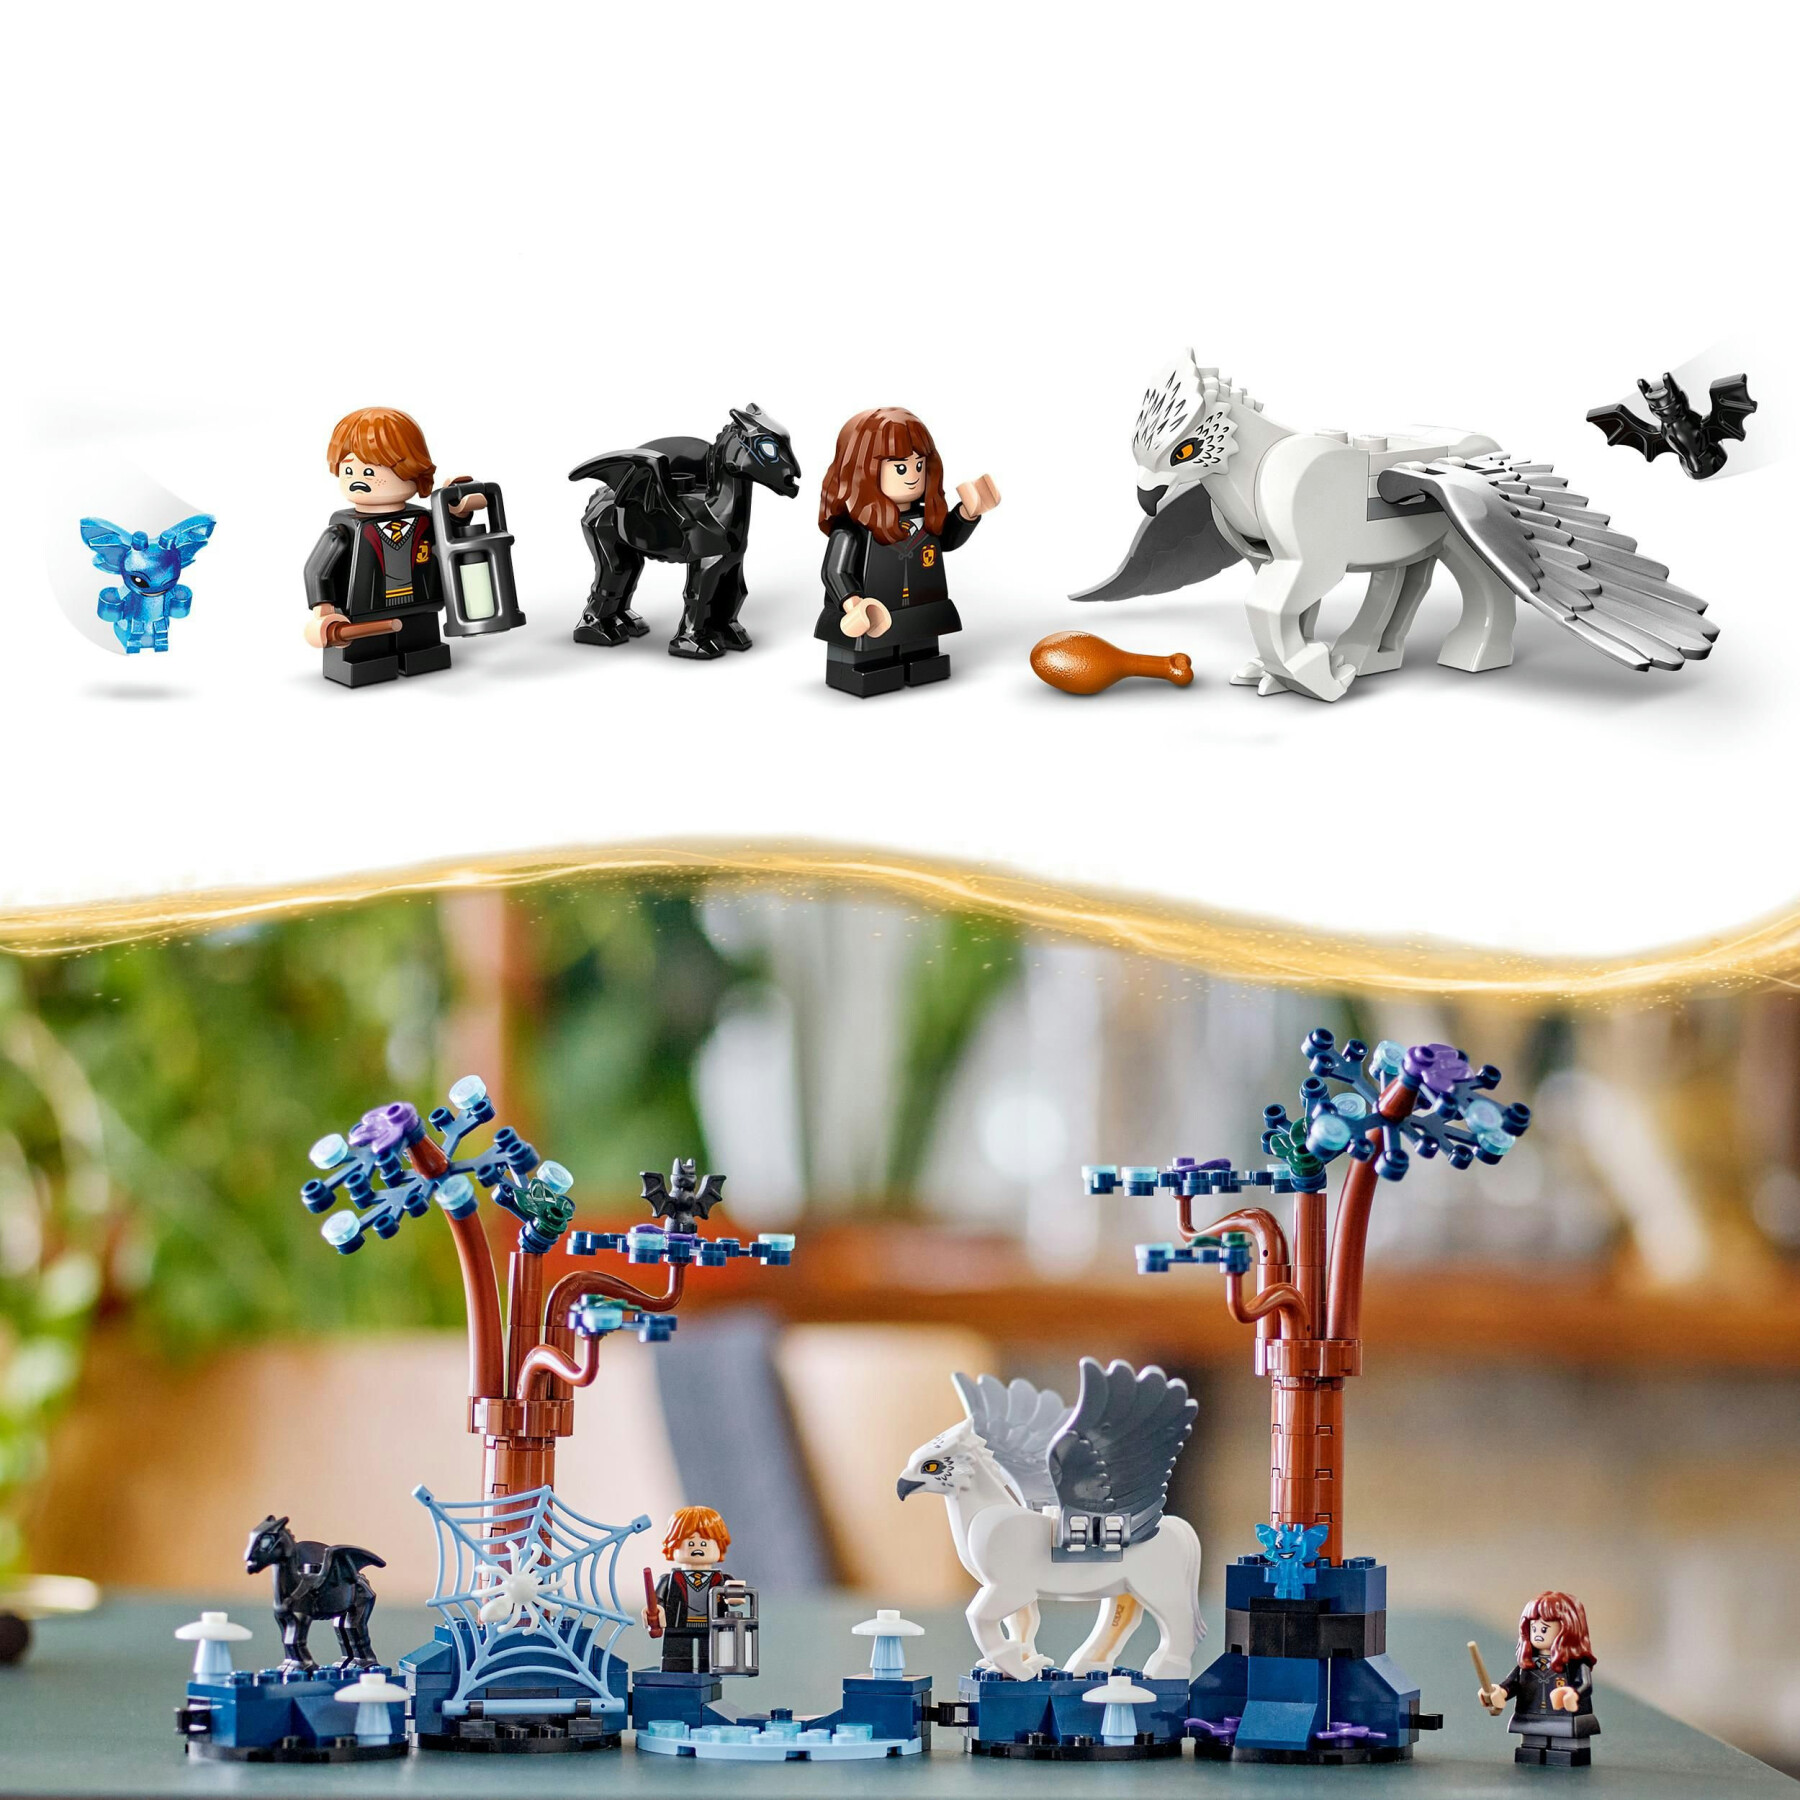 Lego harry potter 76432 foresta proibita: creature magiche, set con animali giocattolo fantasy, gioco per bambini di 8+ anni - Harry Potter, LEGO® Harry Potter™